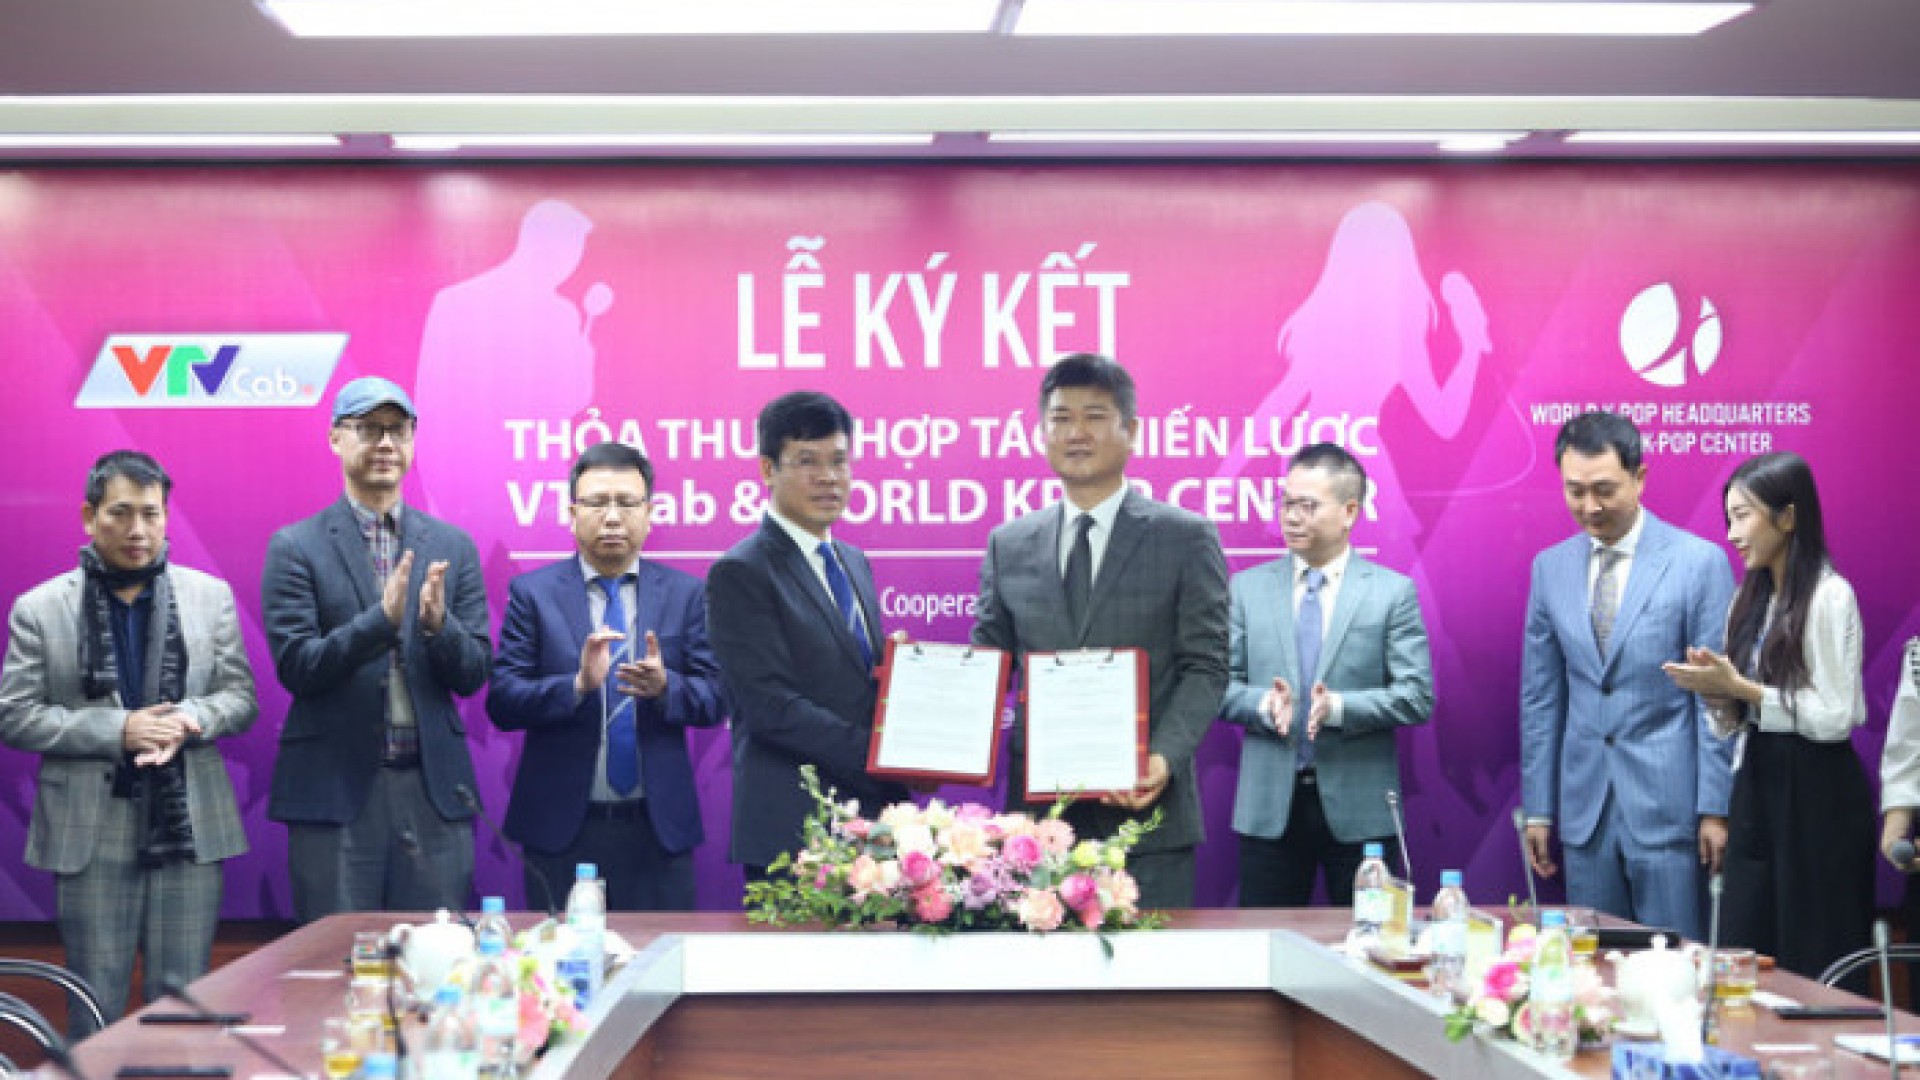 VTVcab và World K-Pop Center hợp tác lập trung tâm đào tạo K-Pop ở Việt Nam